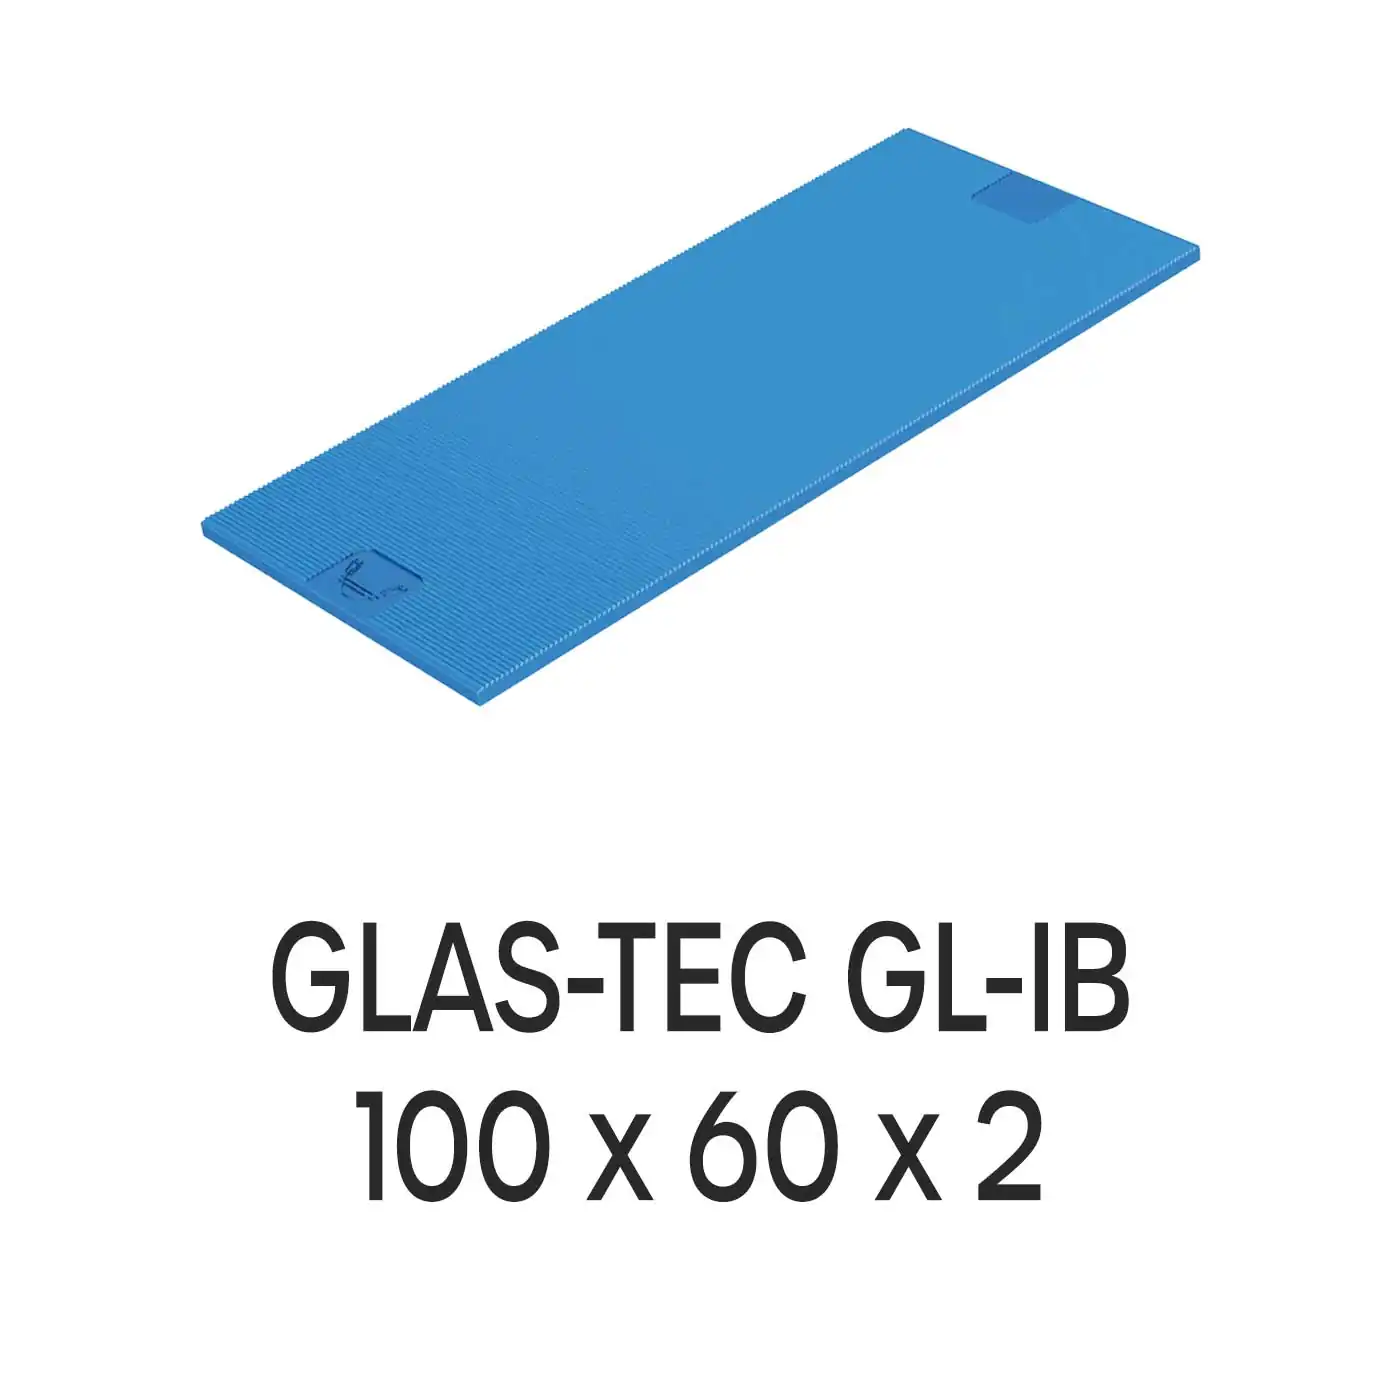 Roto Verglasungsklotz GLAS-TEC GL-IB, 100 x 60 x 2 mm, schwarz, 500 Stück